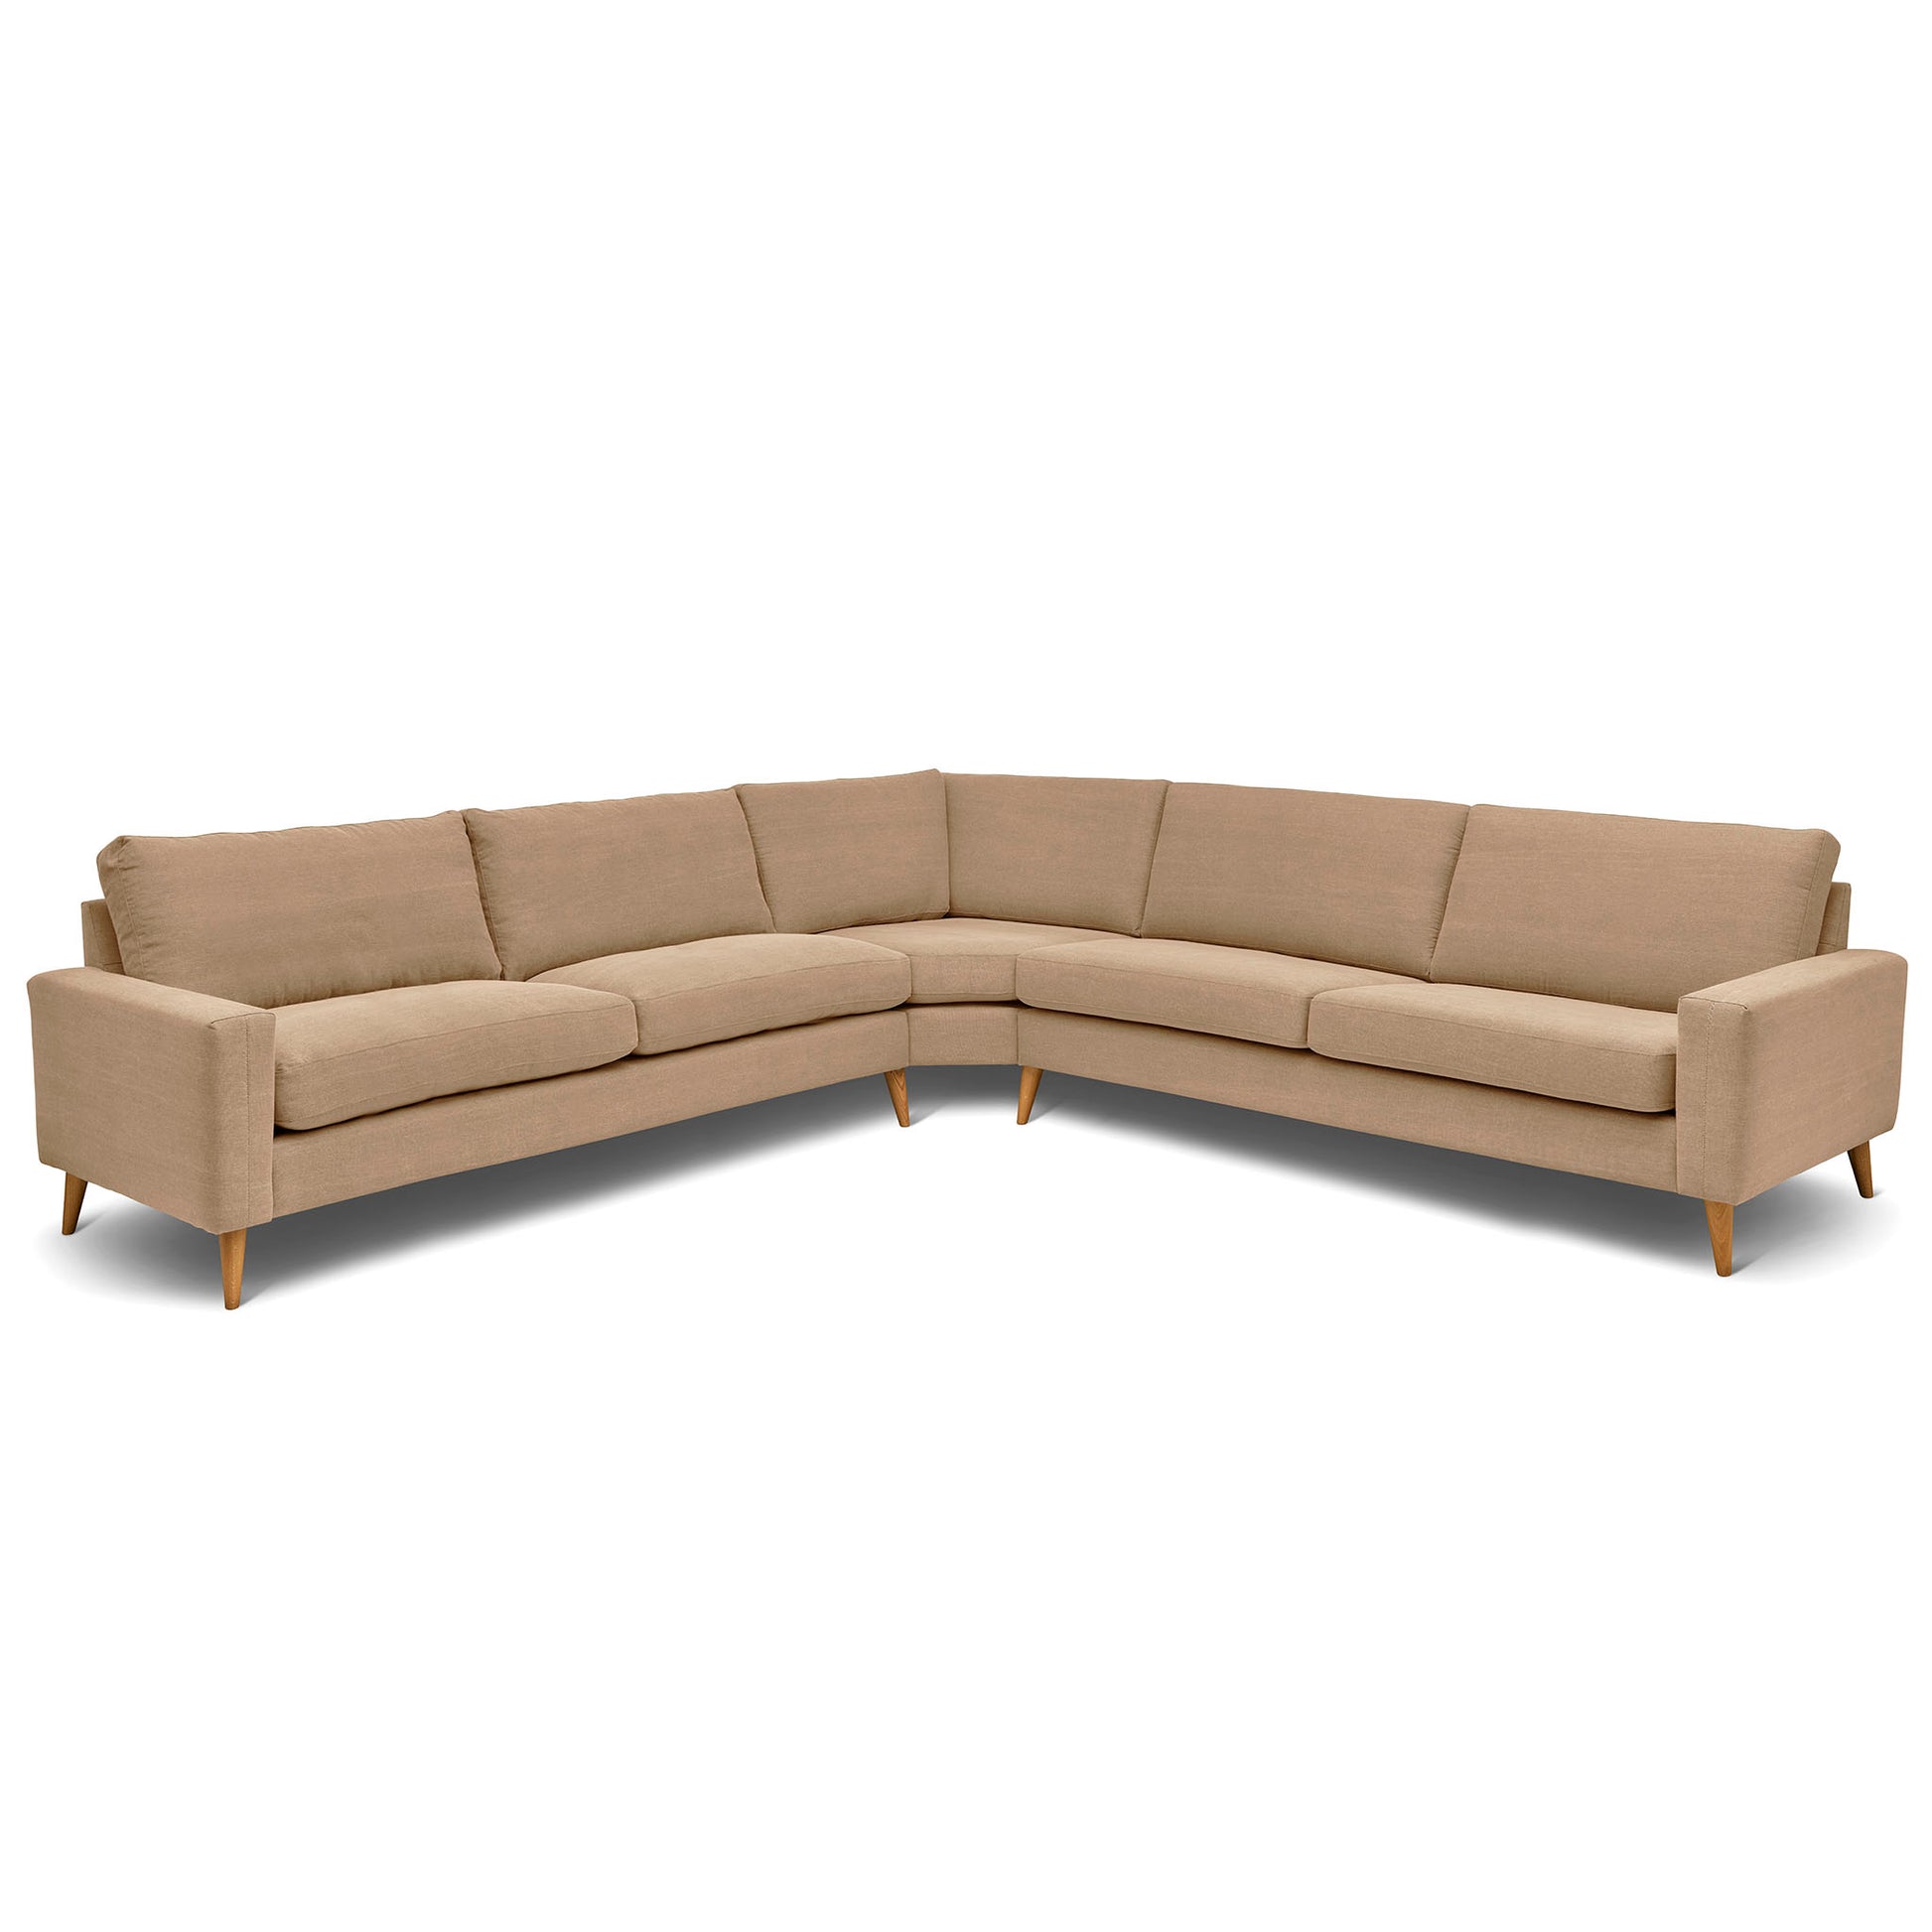 Stor kvadratisk hörnsoffa med måttet 321x321 cm. Sittvänlig soffa för äldre i beige tyg